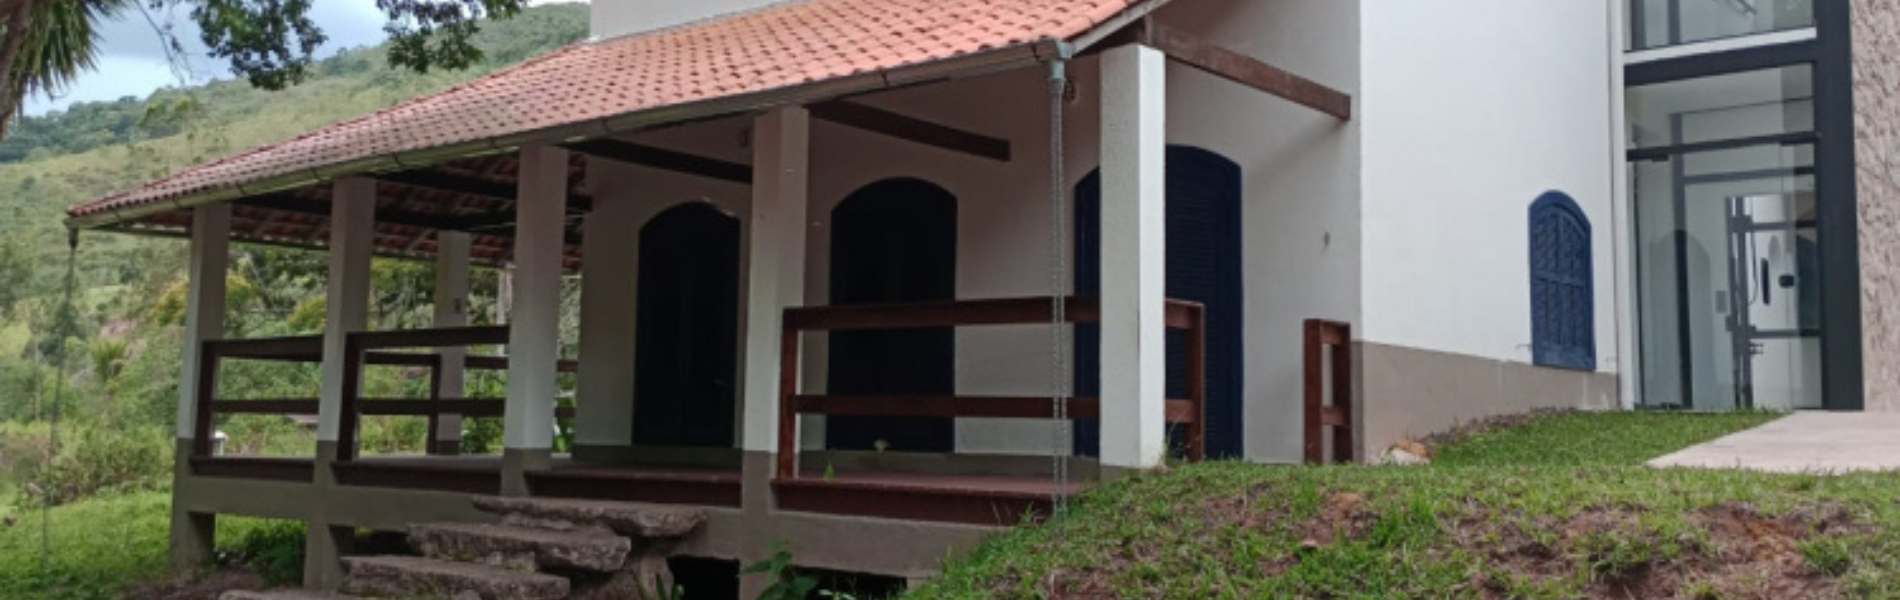 Foto de casa do Quilombo São José, mostrando fachada branca, pequena escada de pedra e grama verde em volta